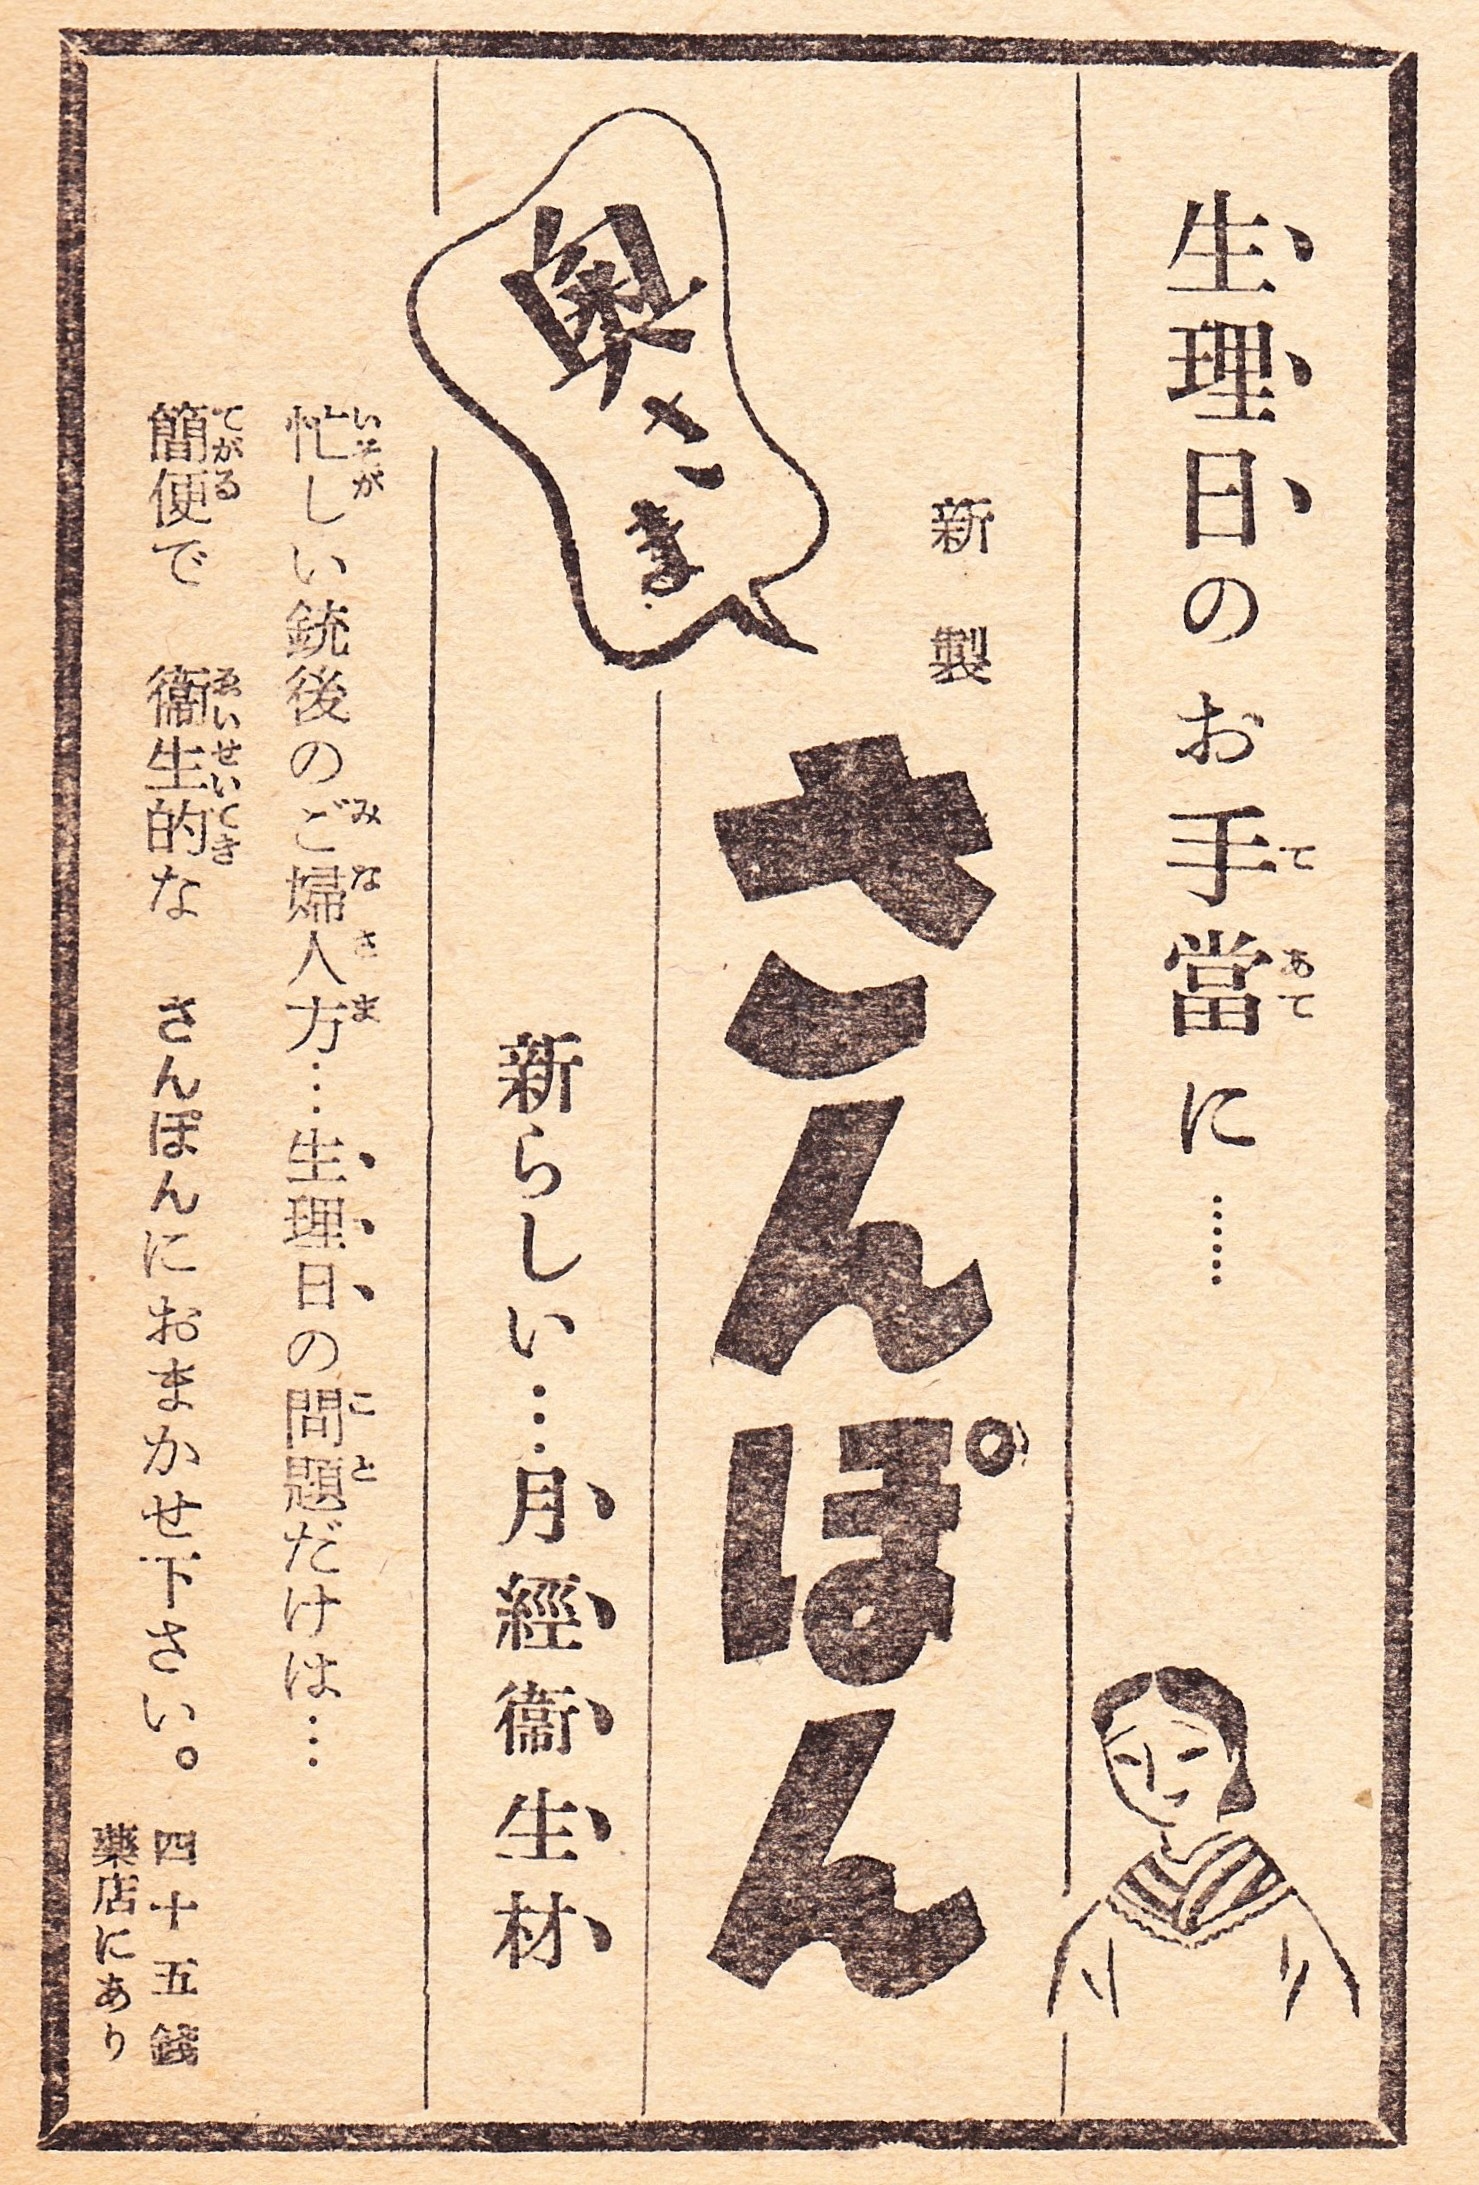 戦争中 女性は生理をどう過ごしていたのか 明治 昭和の広告でわかること